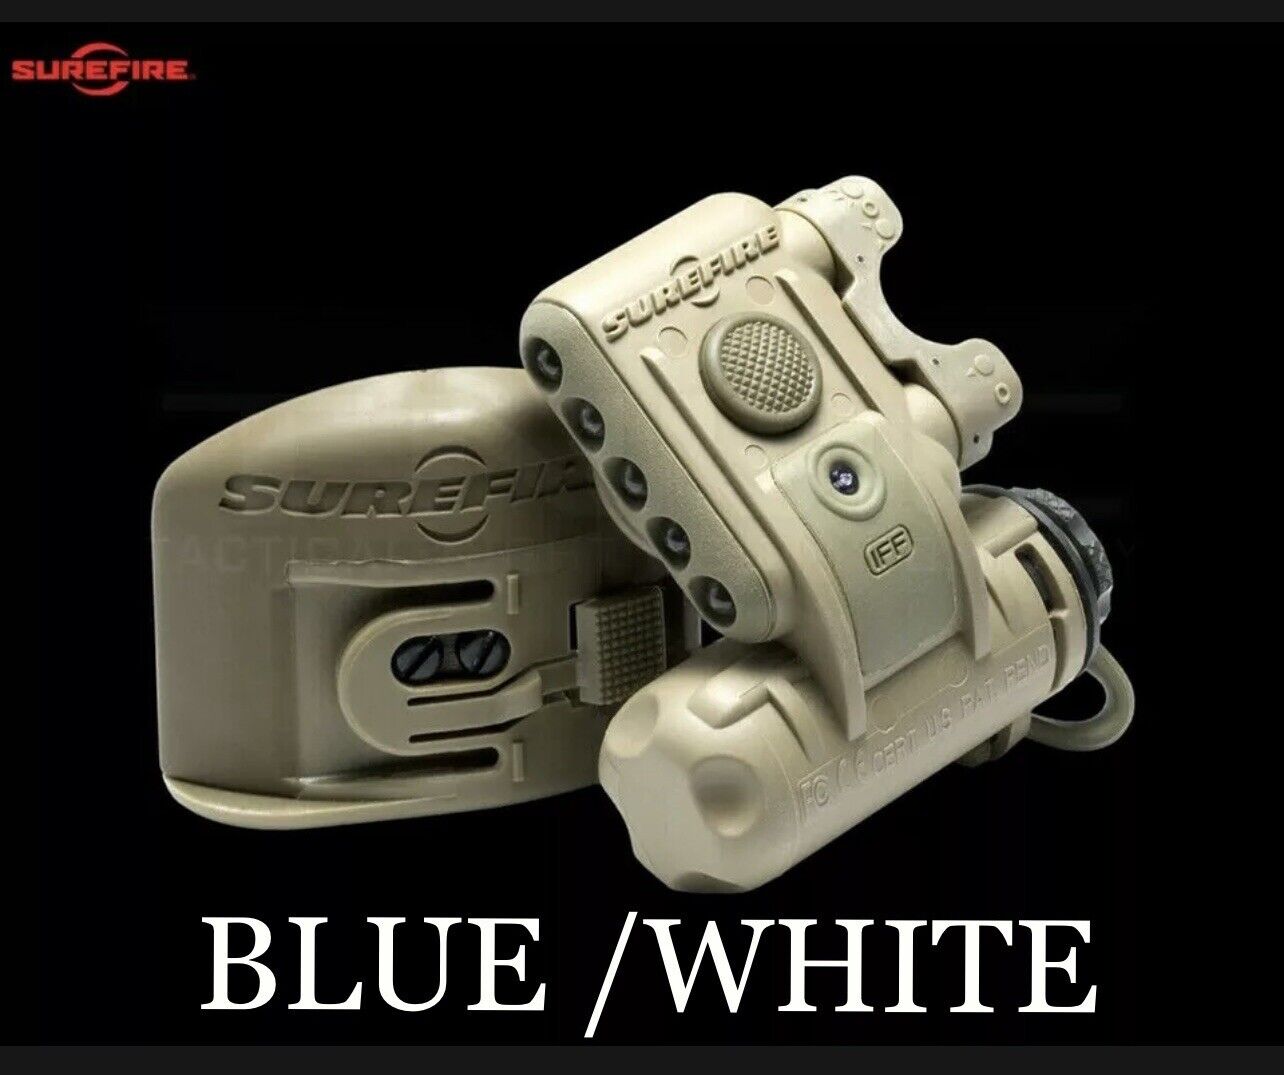 Surefire helmet light, BLUE/WHITE